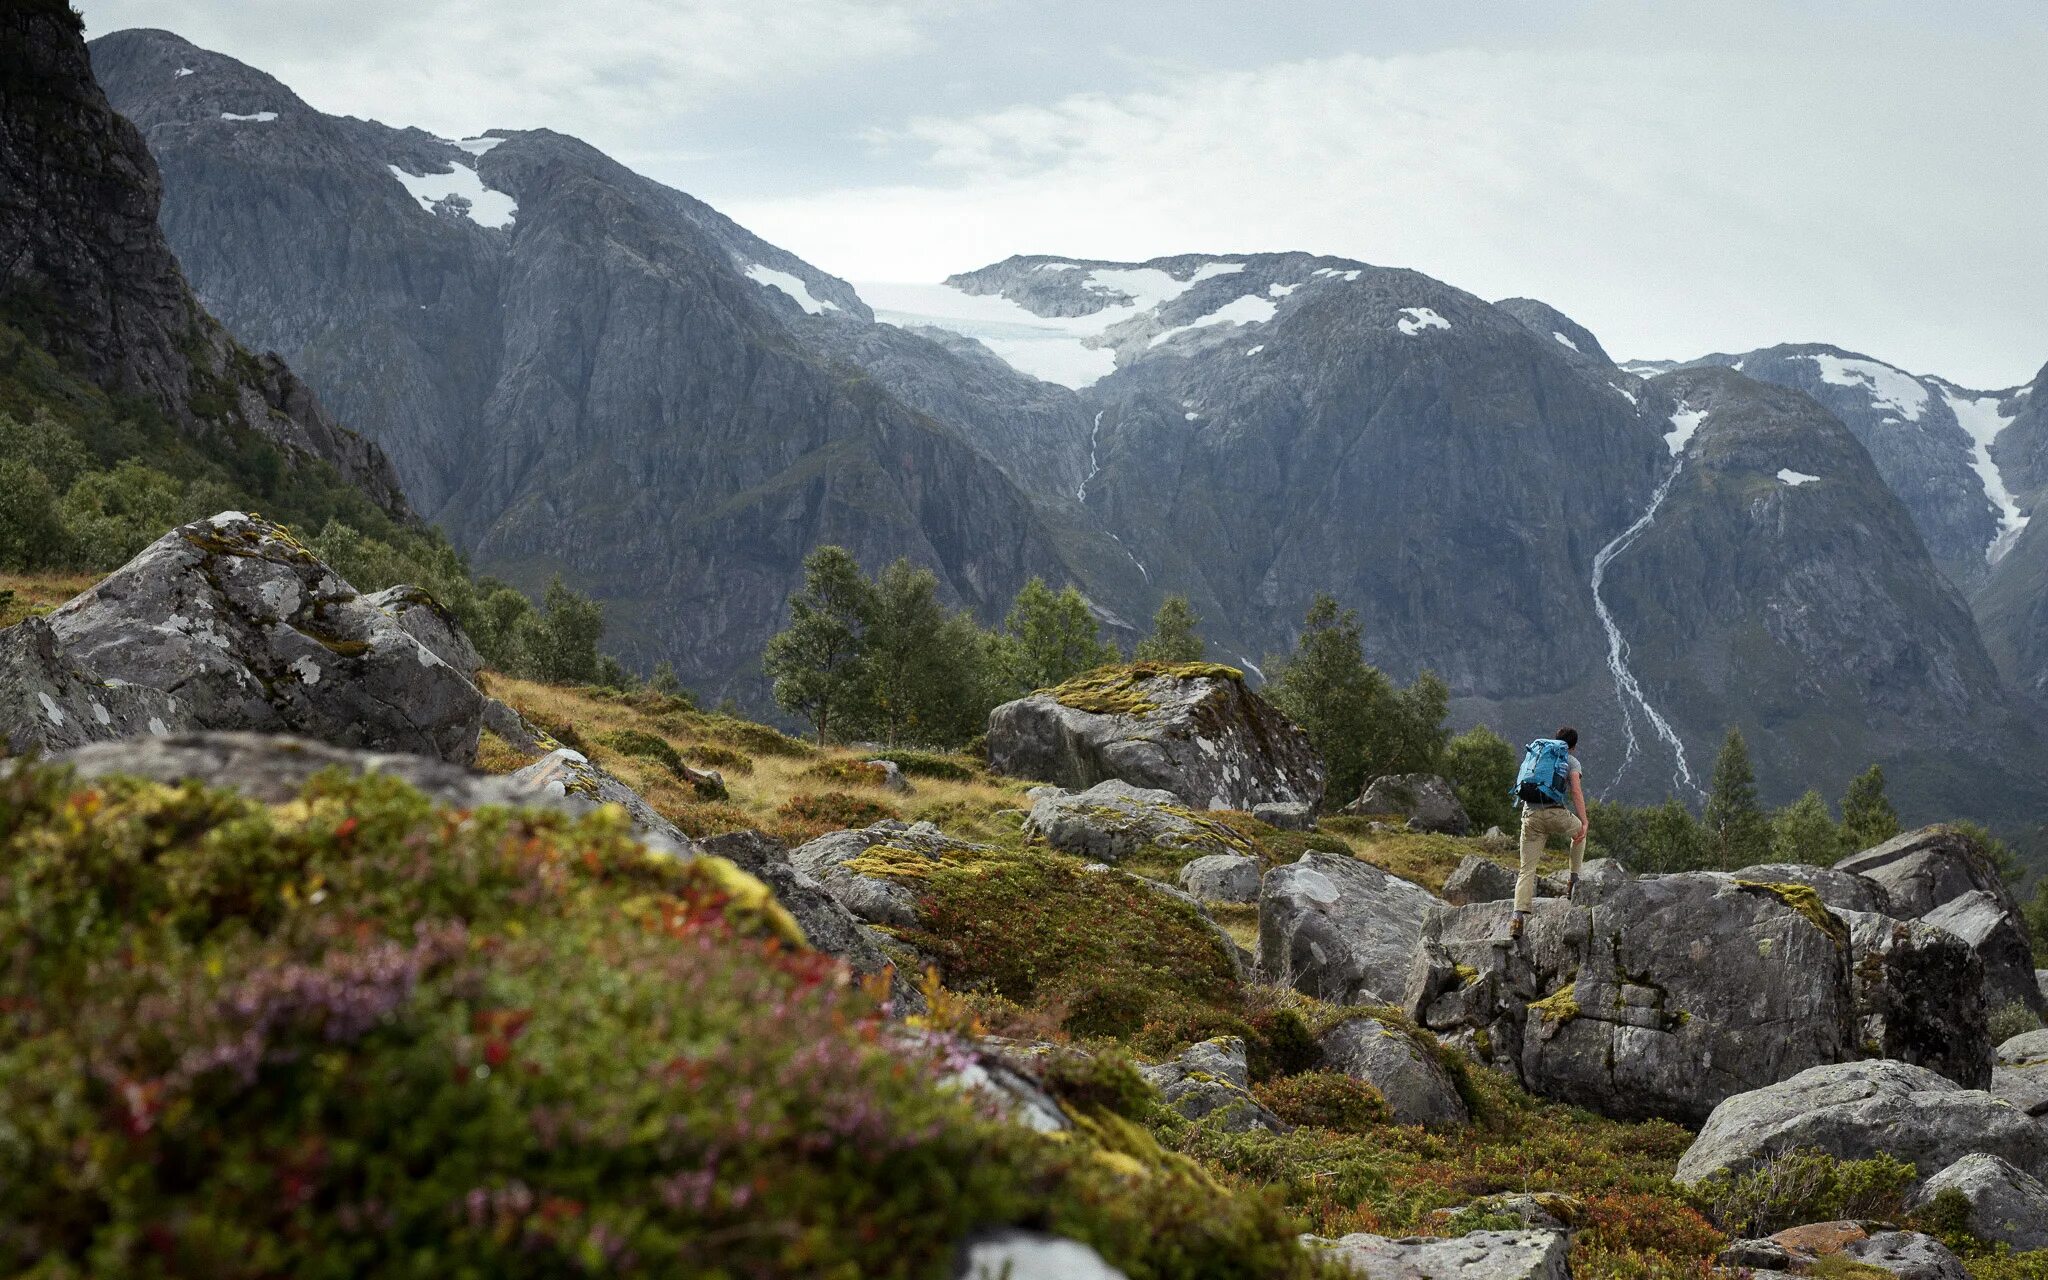 Самая высокая точка скандинавских гор